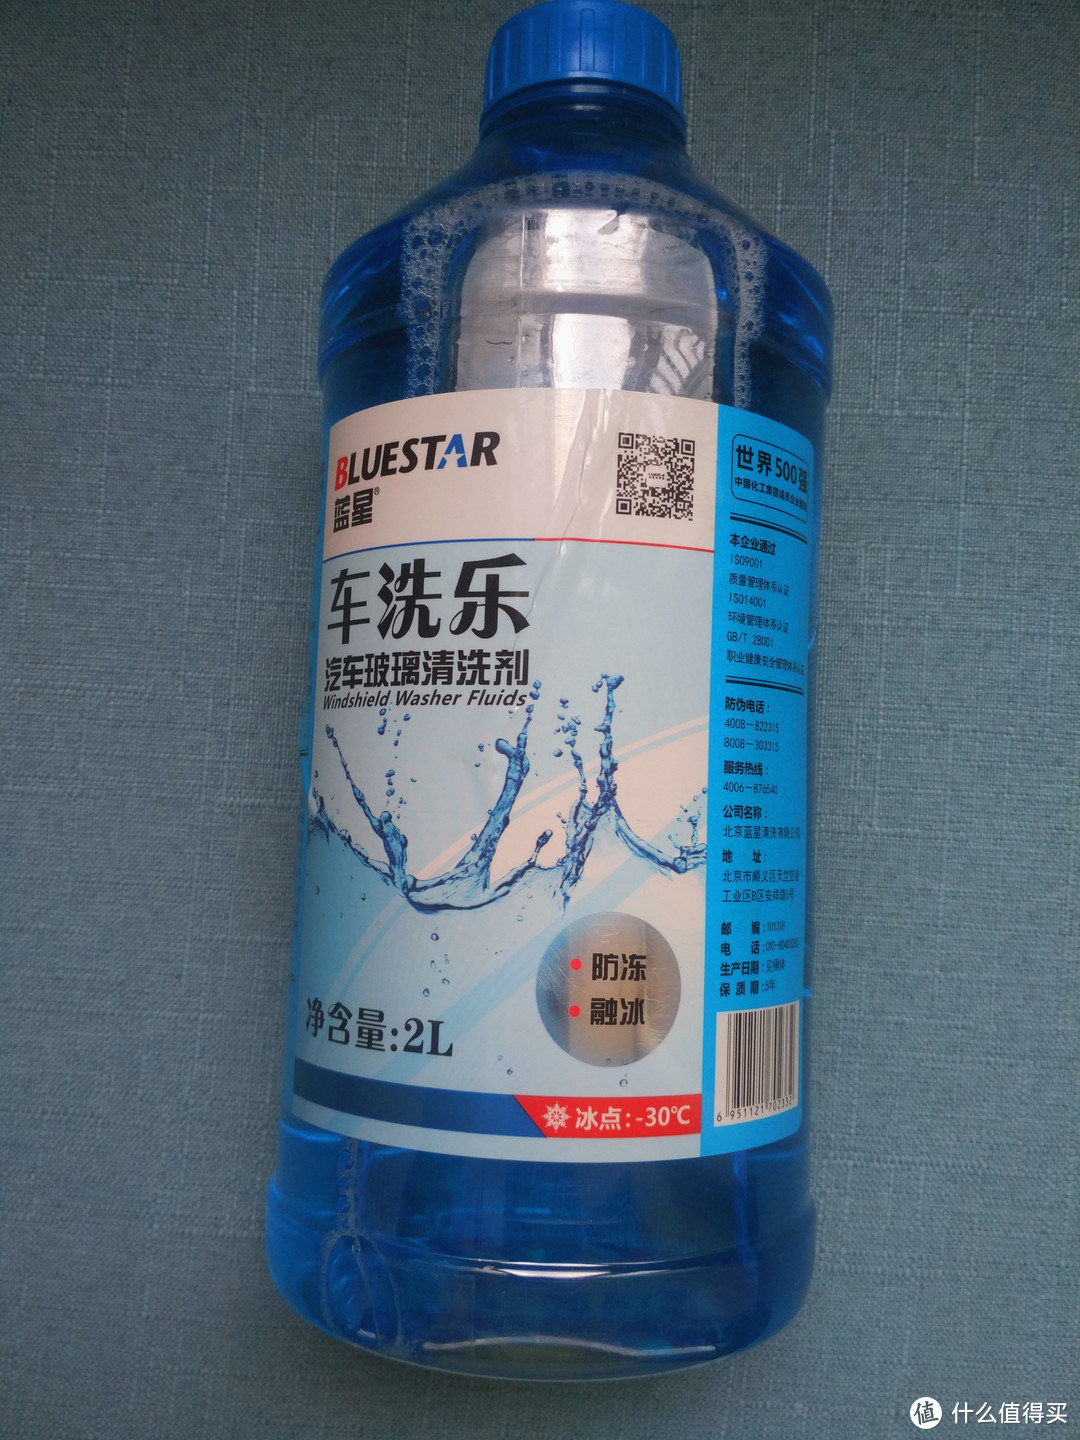 我习惯购买的玻璃水品牌——蓝星玻璃水